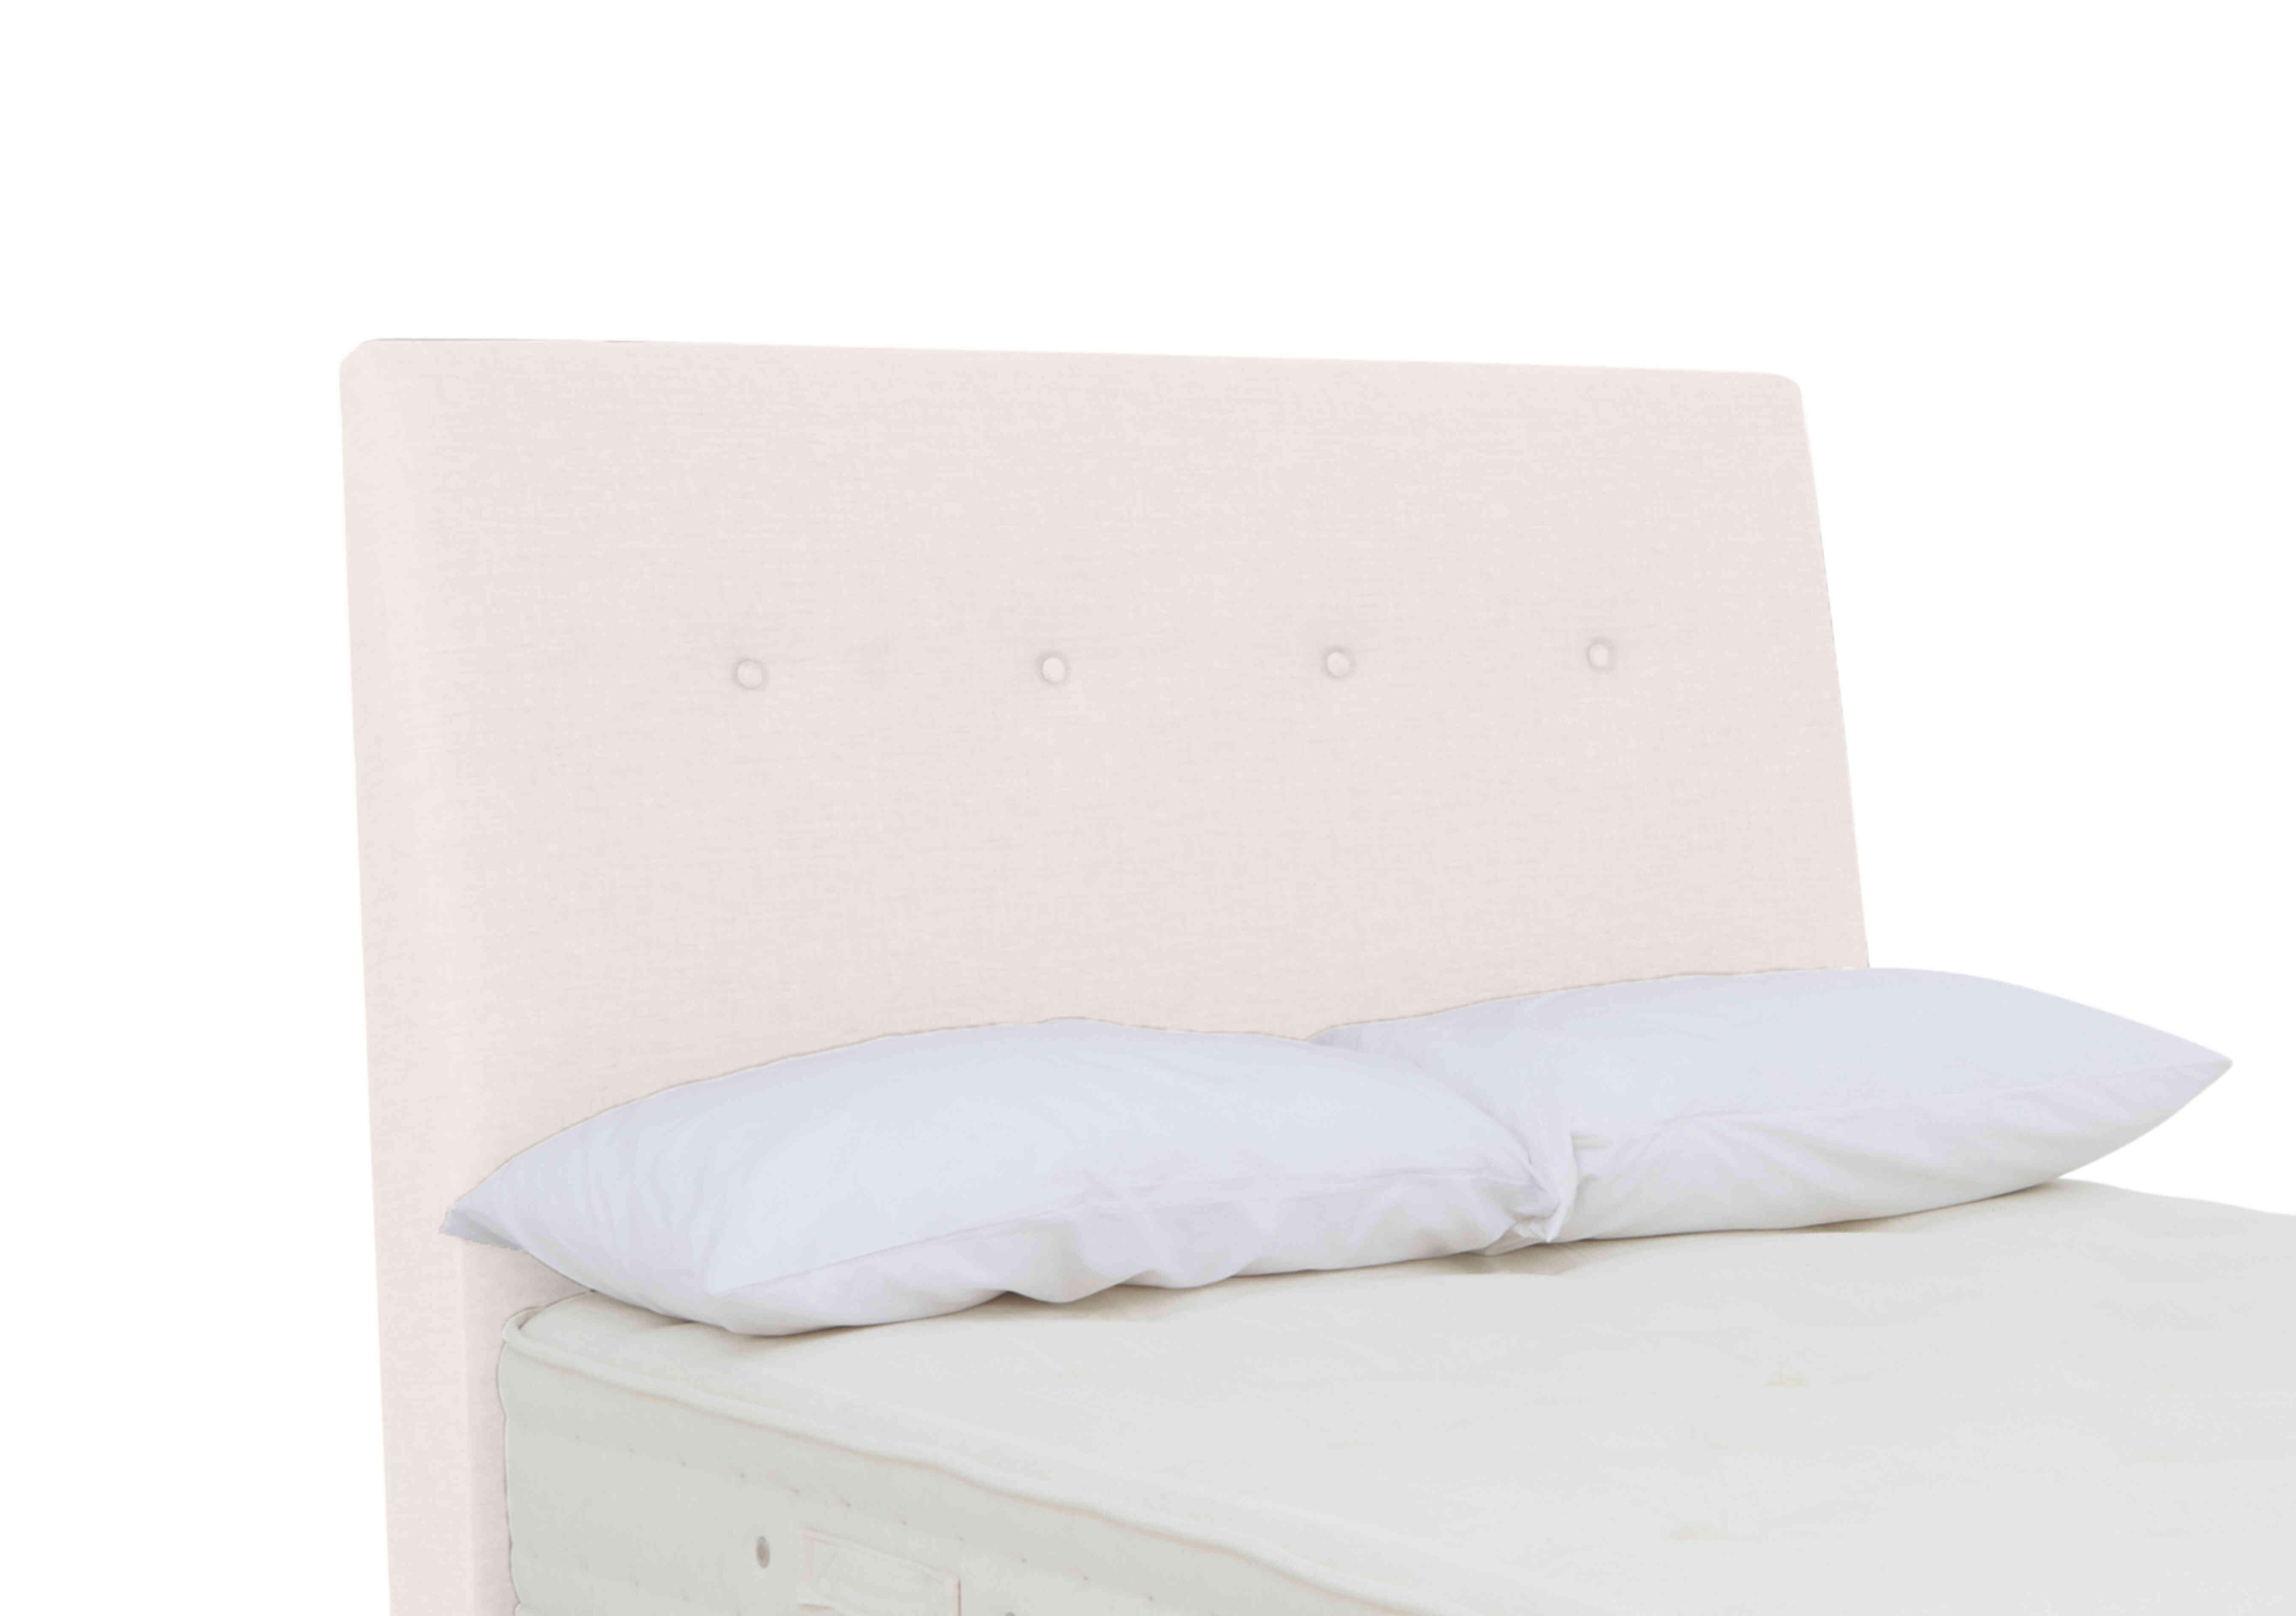 Askett Floor Standing Headboard in Premium 900 White Opal on Furniture Village